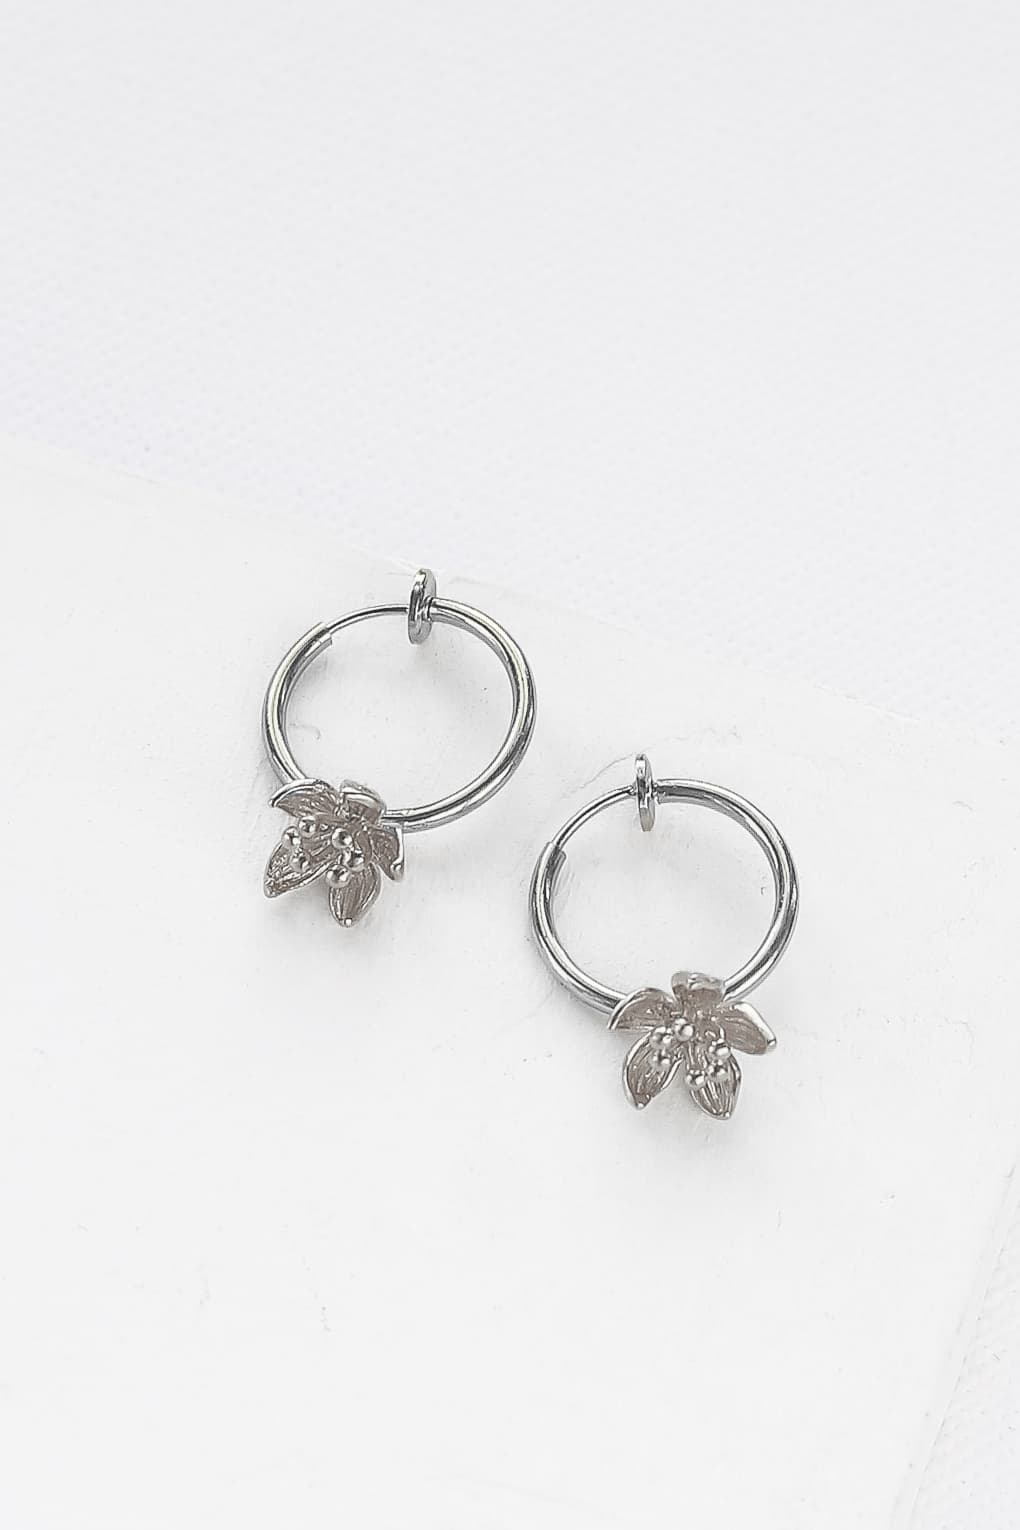 Blossom clip on Hoop Earrings